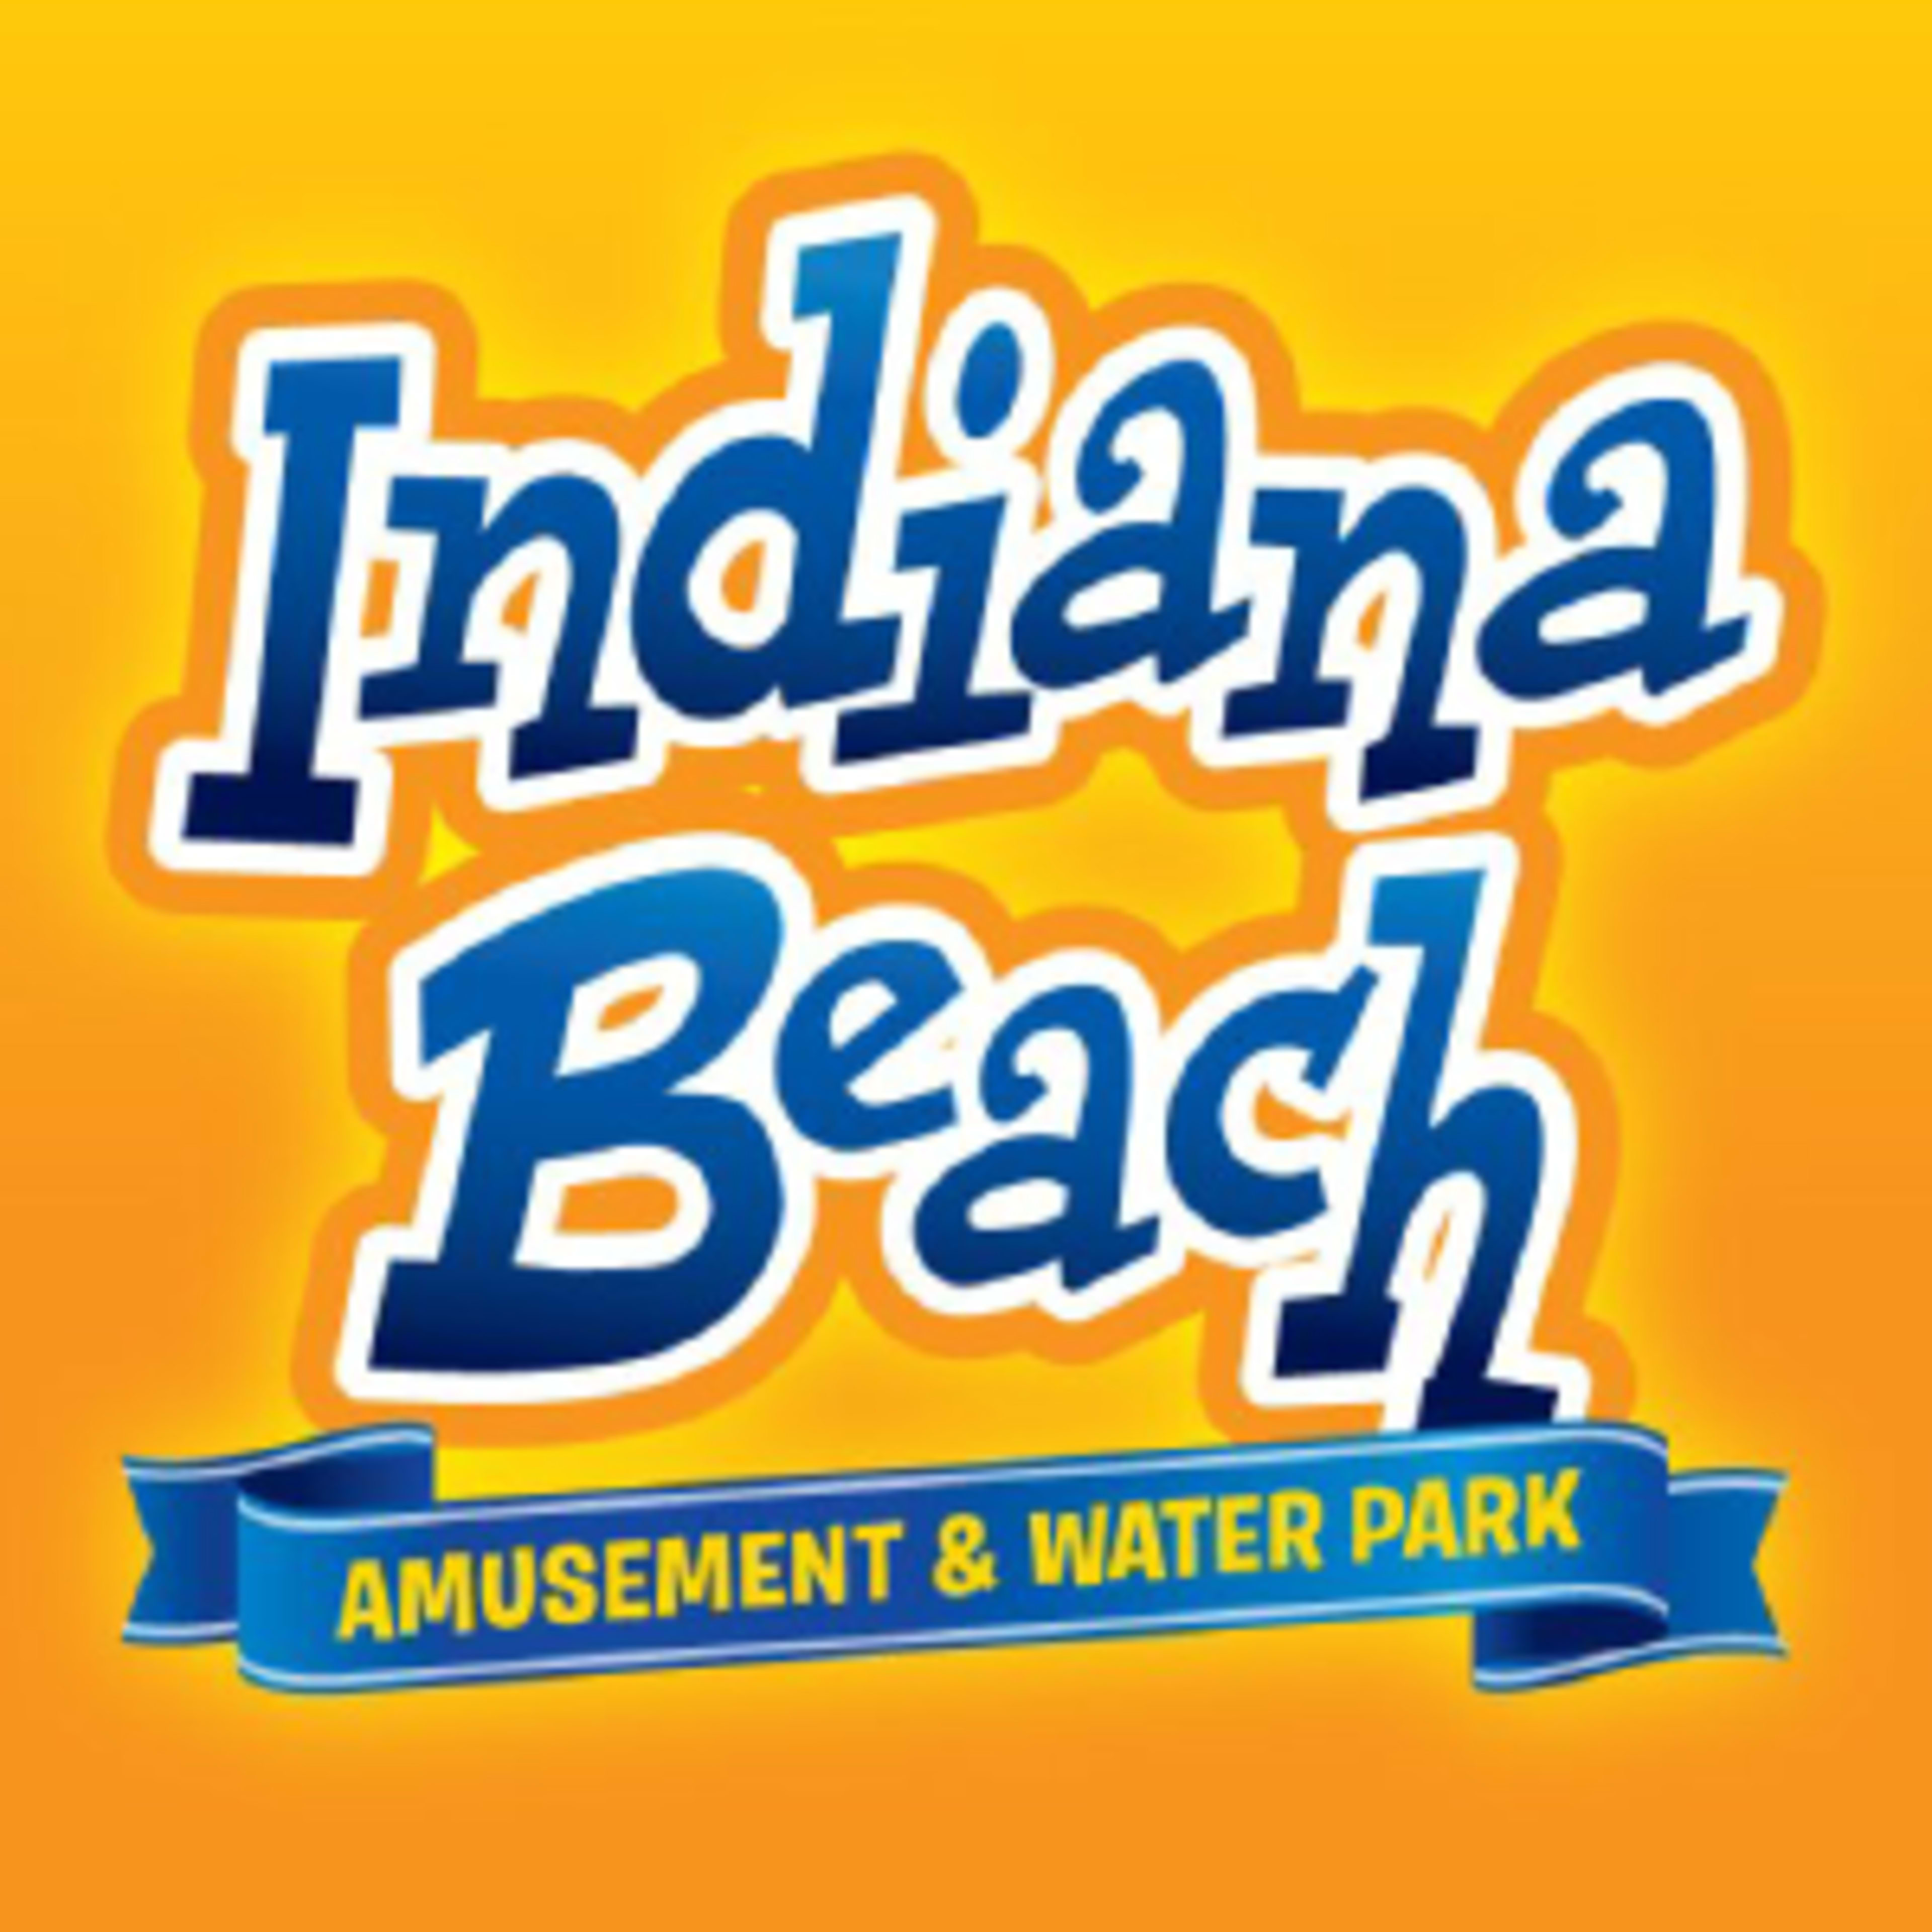 Indiana BeachCode